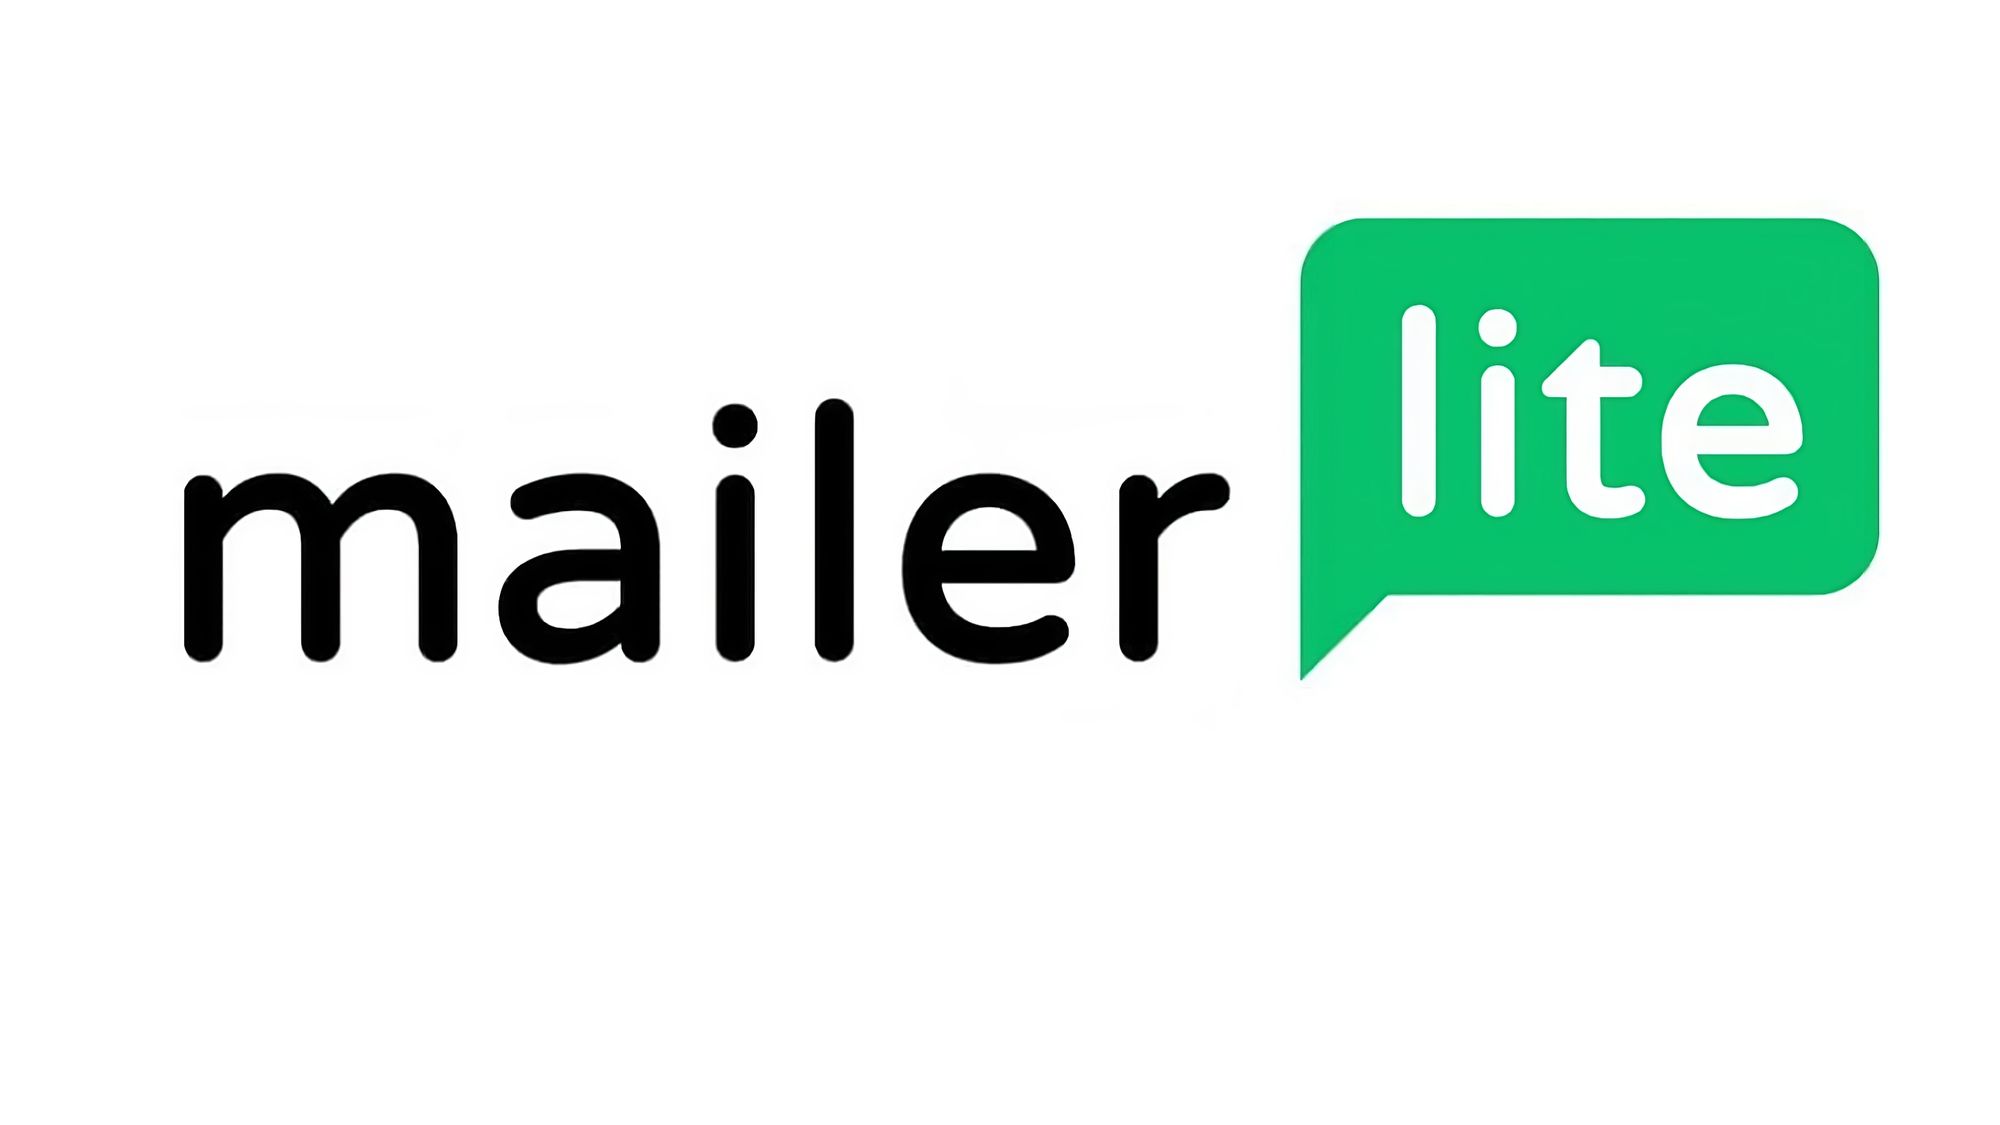 Mengoptimalkan Pemasaran Online: Panduan Lengkap Integrasi Mayar dengan Mailer Lite untuk Email Marketing yang Efektif Menggunakan Fitur Email Marketing (3rd Party)